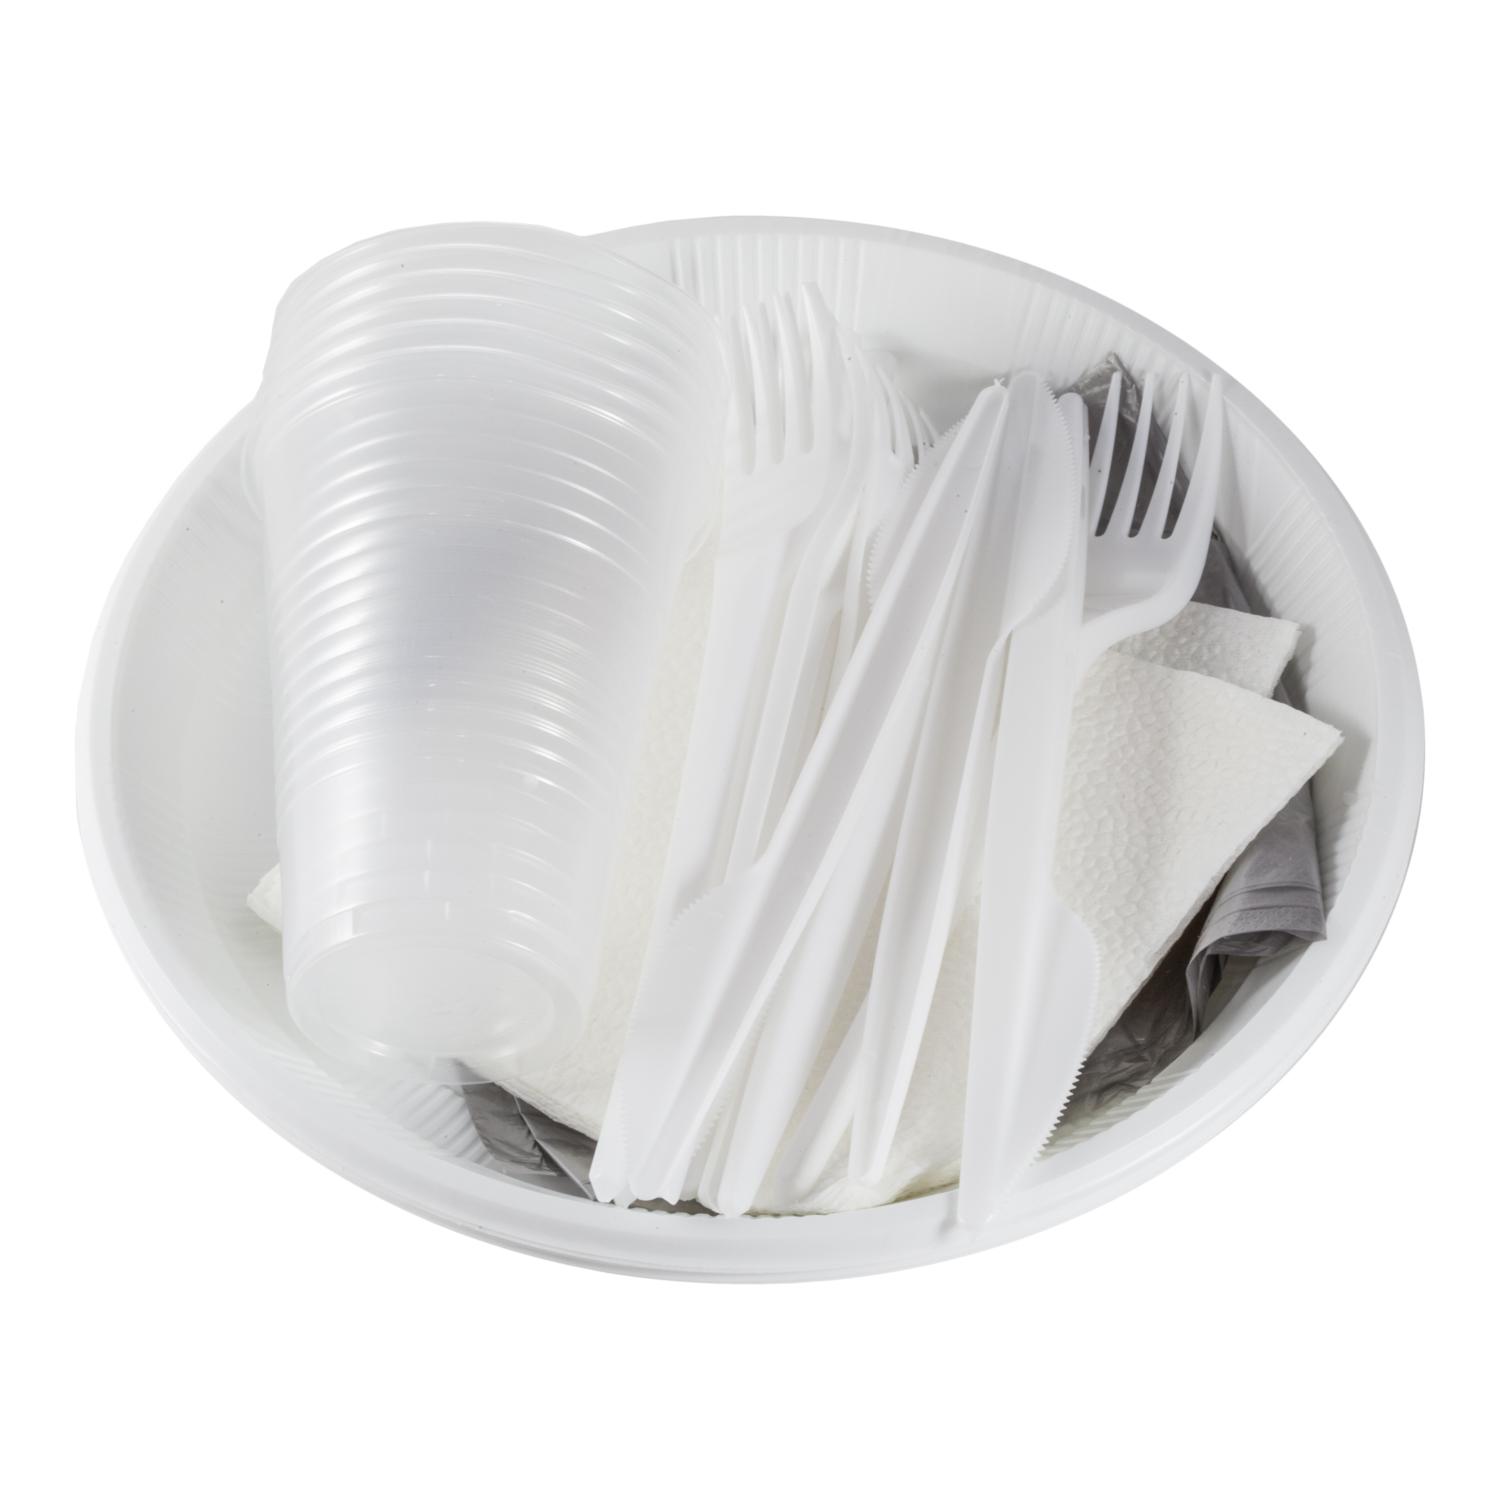 Посуда одноразовая набор миска 475 мл., тарелка диаметр 205 мм., тарелка десертная диаметр 153 мм., стакан белый 200 мл., вилка, нож, ложка столовая, ложка чайная, Мистерия Набор для пикника, пластиковый пакет